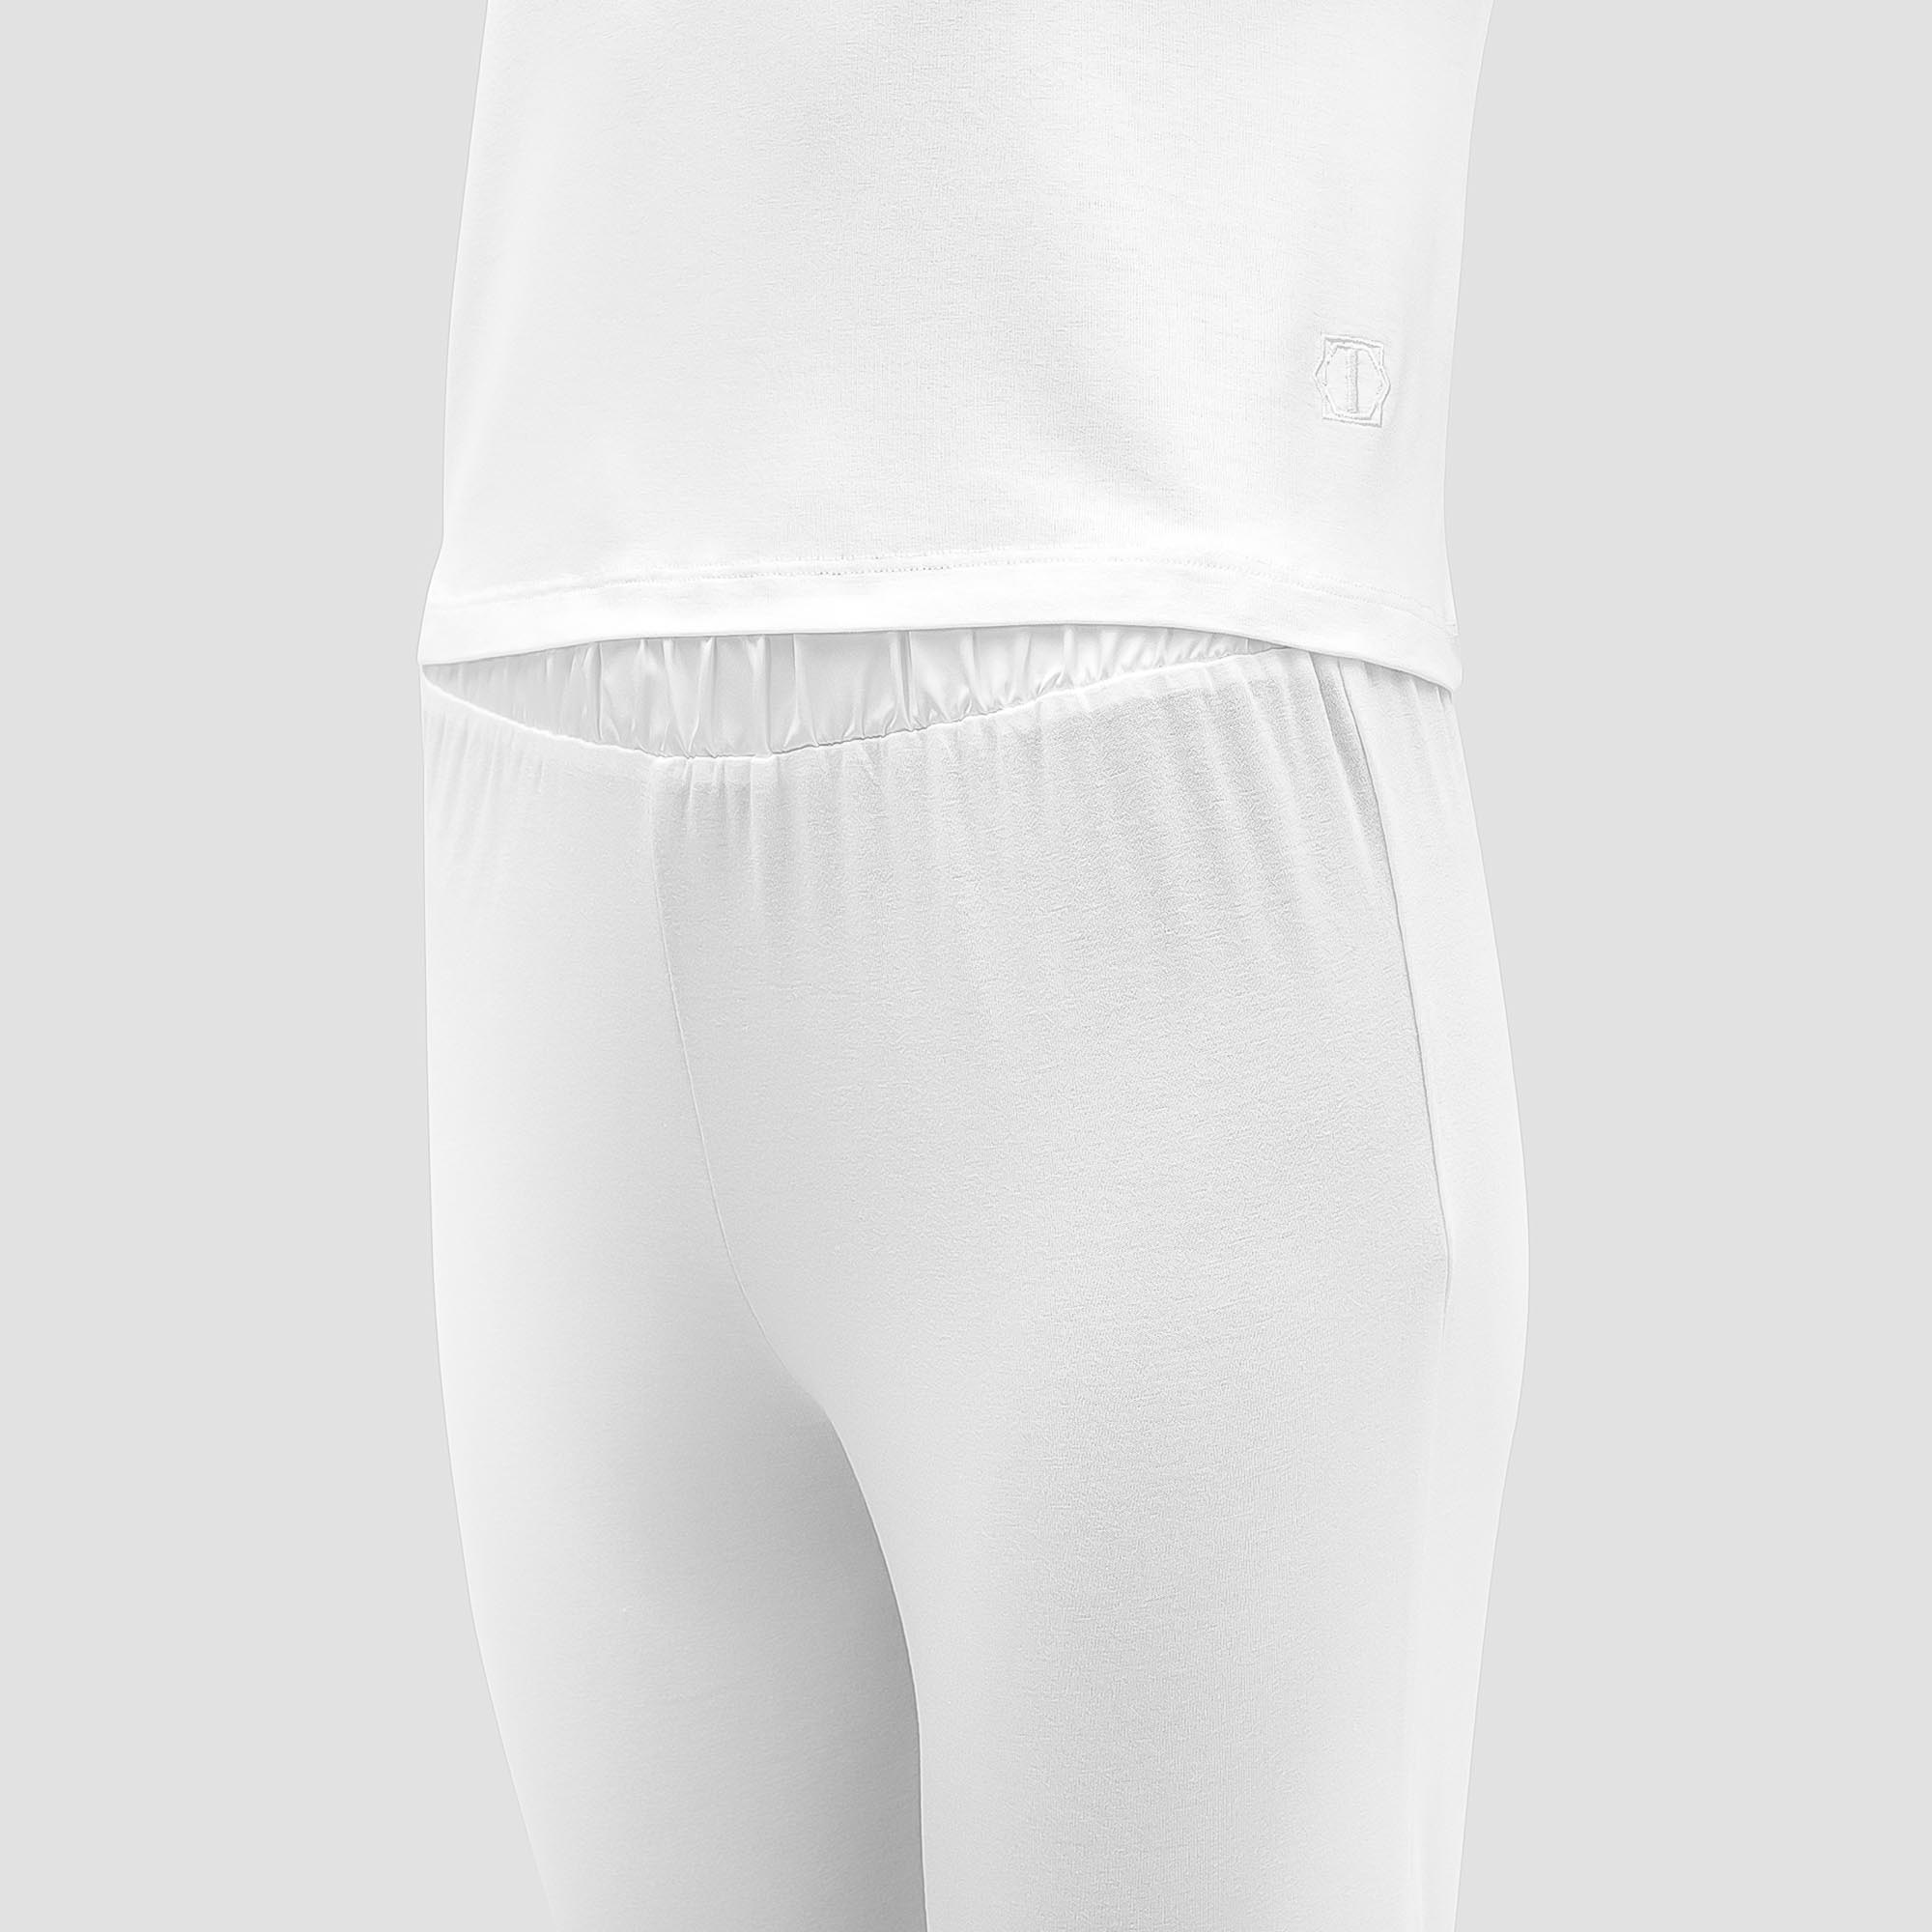 Пижама Togas Ингелла белая женская S(44) 2 предмета, цвет белый, размер S(44) - фото 2